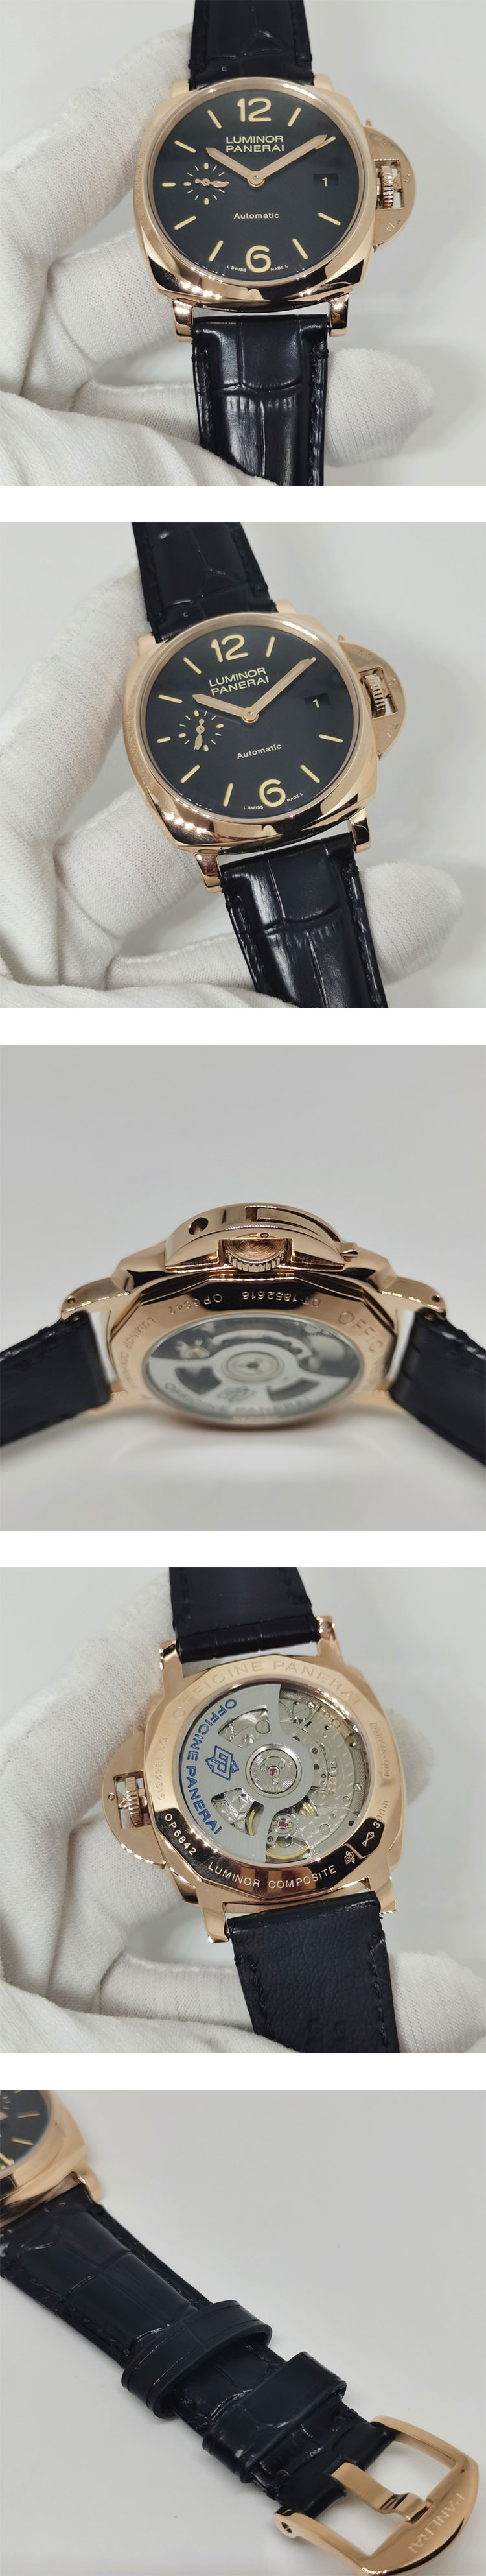 会員登録無料 パネライコピー時計 ルミノール ドゥエ 3デイズ オロロッソ PAM00908 ブラック 最安値新作掲載